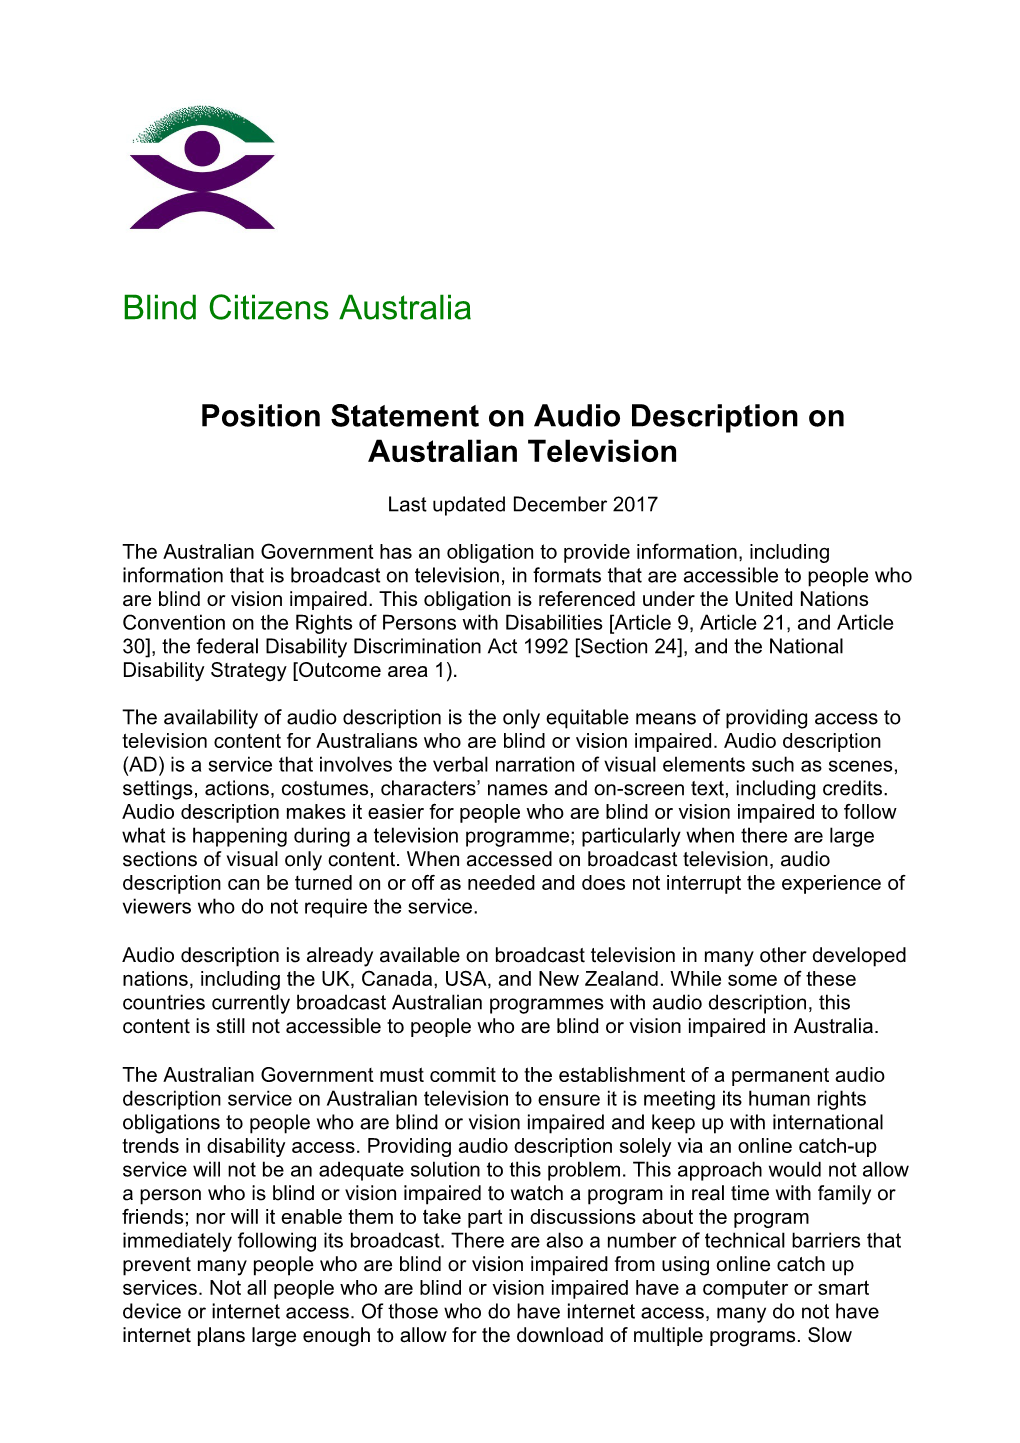 Position Statement on Audio Description on Australian Television